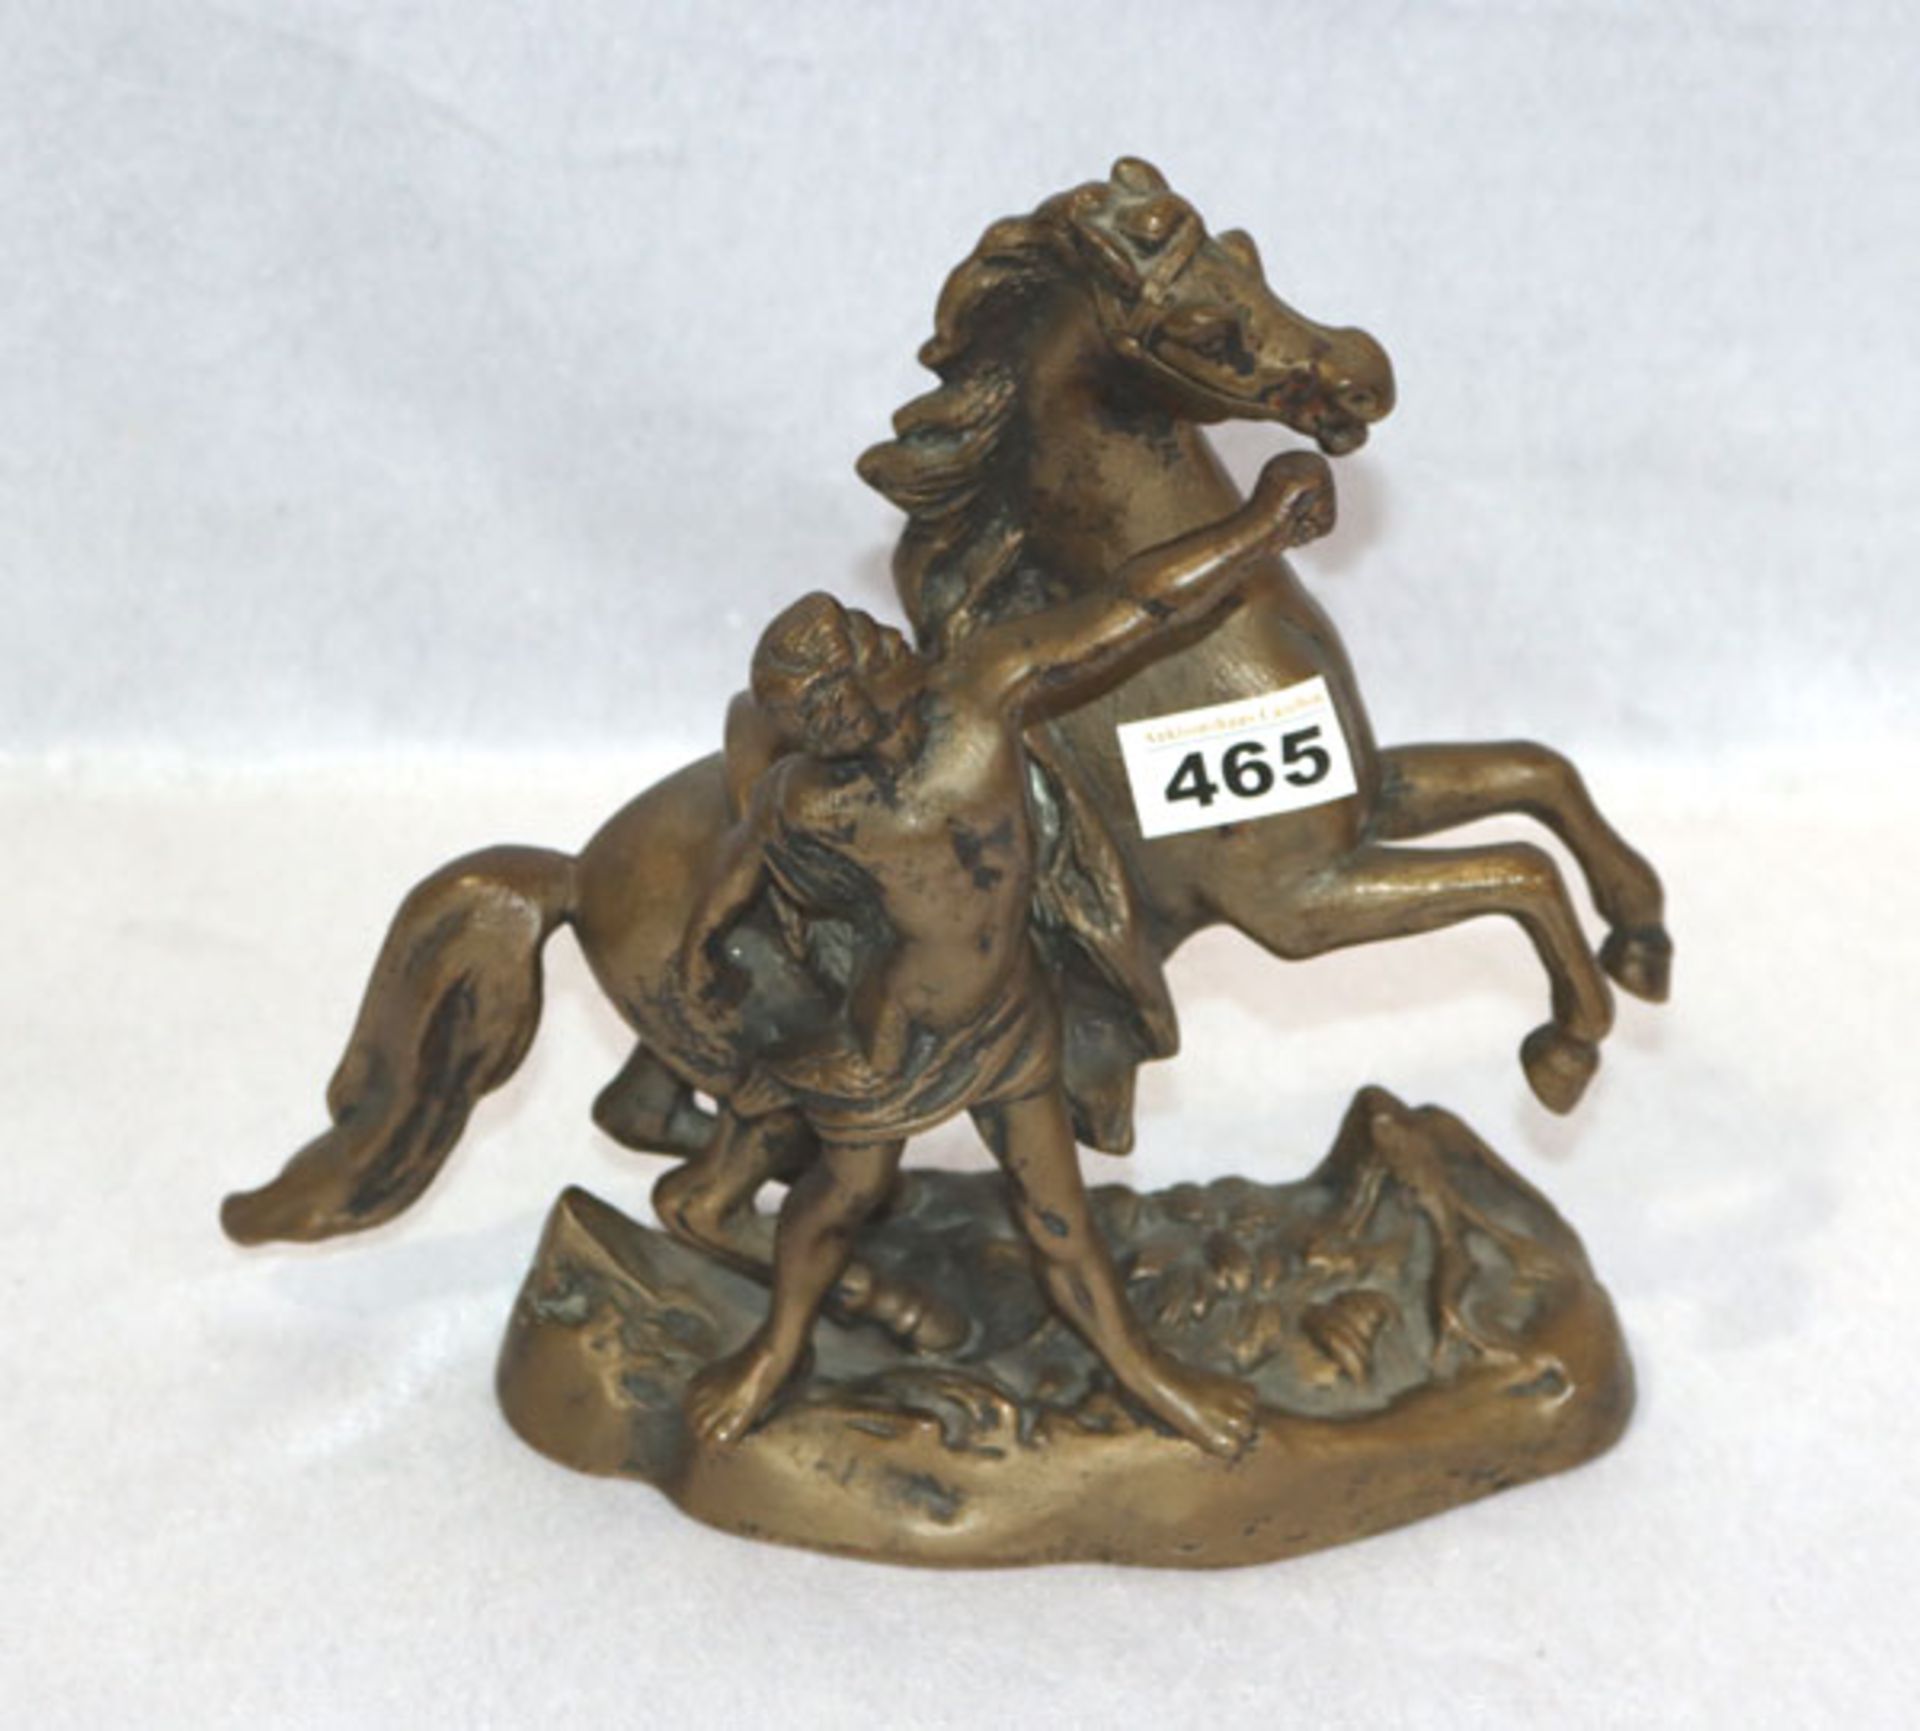 Metall Figur 'Mann mit Pferd', komplett ?, H 25 cm, L 29 cm, Altersspuren